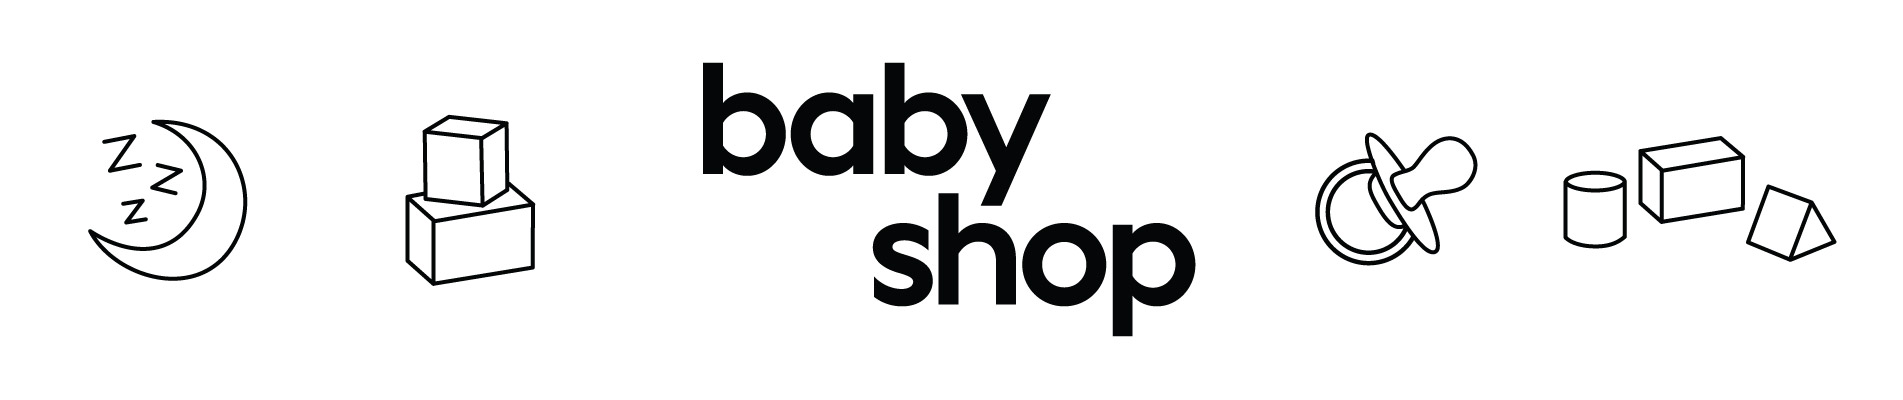 Baby-shop-header-image